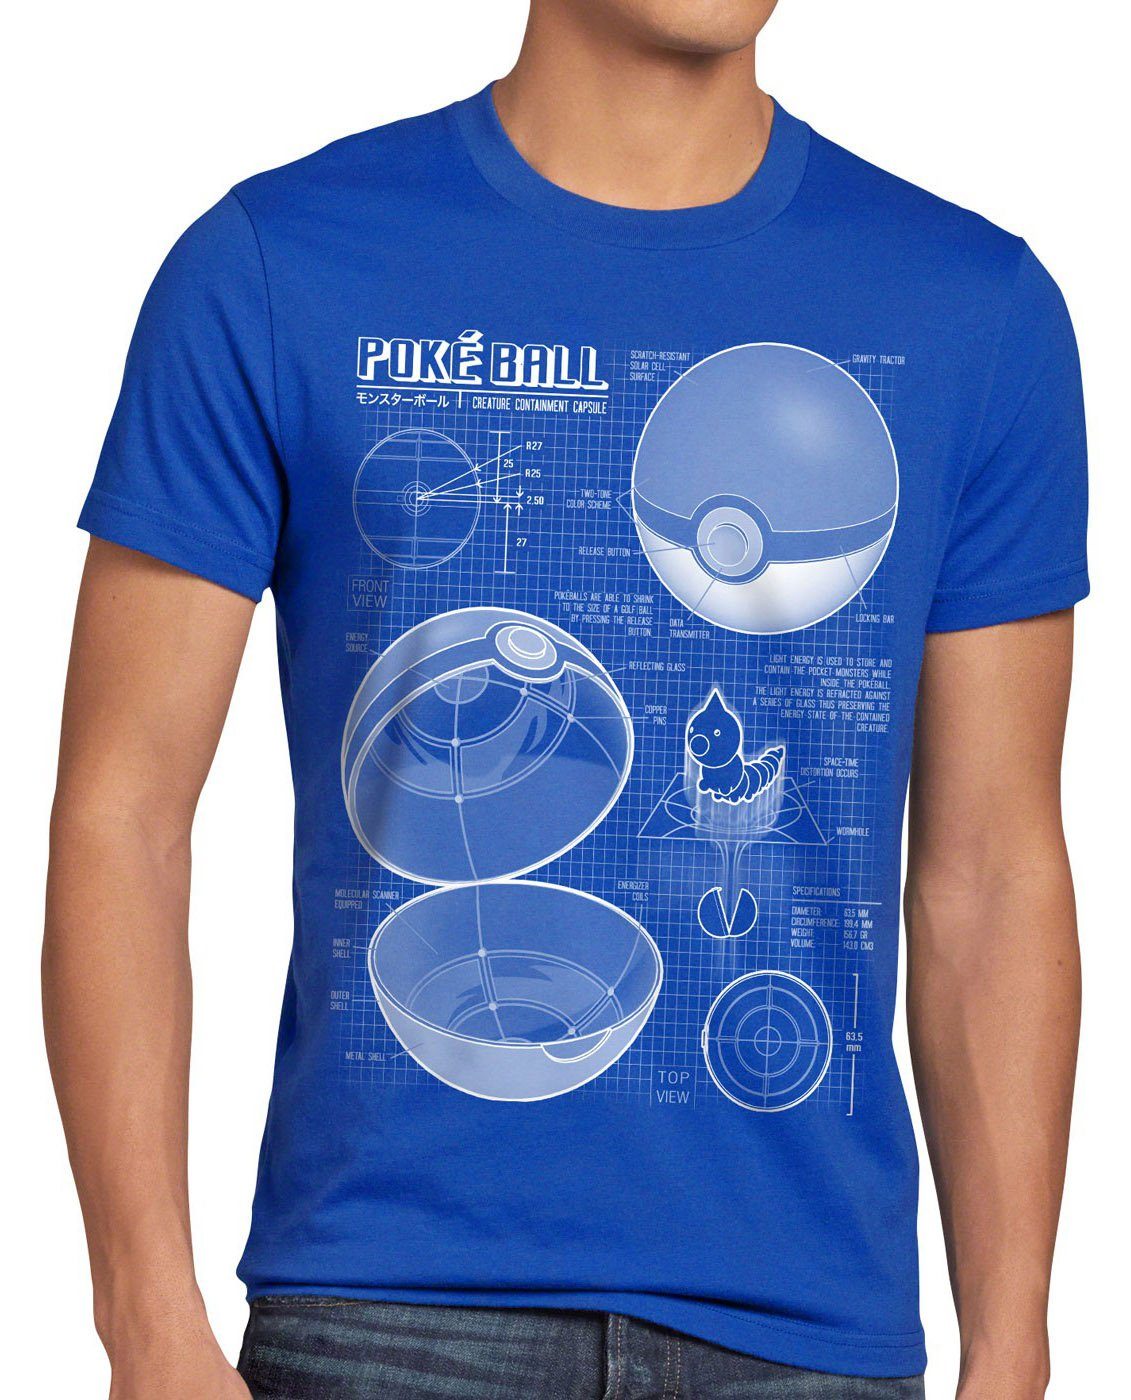 T-Shirt monster Print-Shirt Blaupause Herren Pokéball spiel style3 online